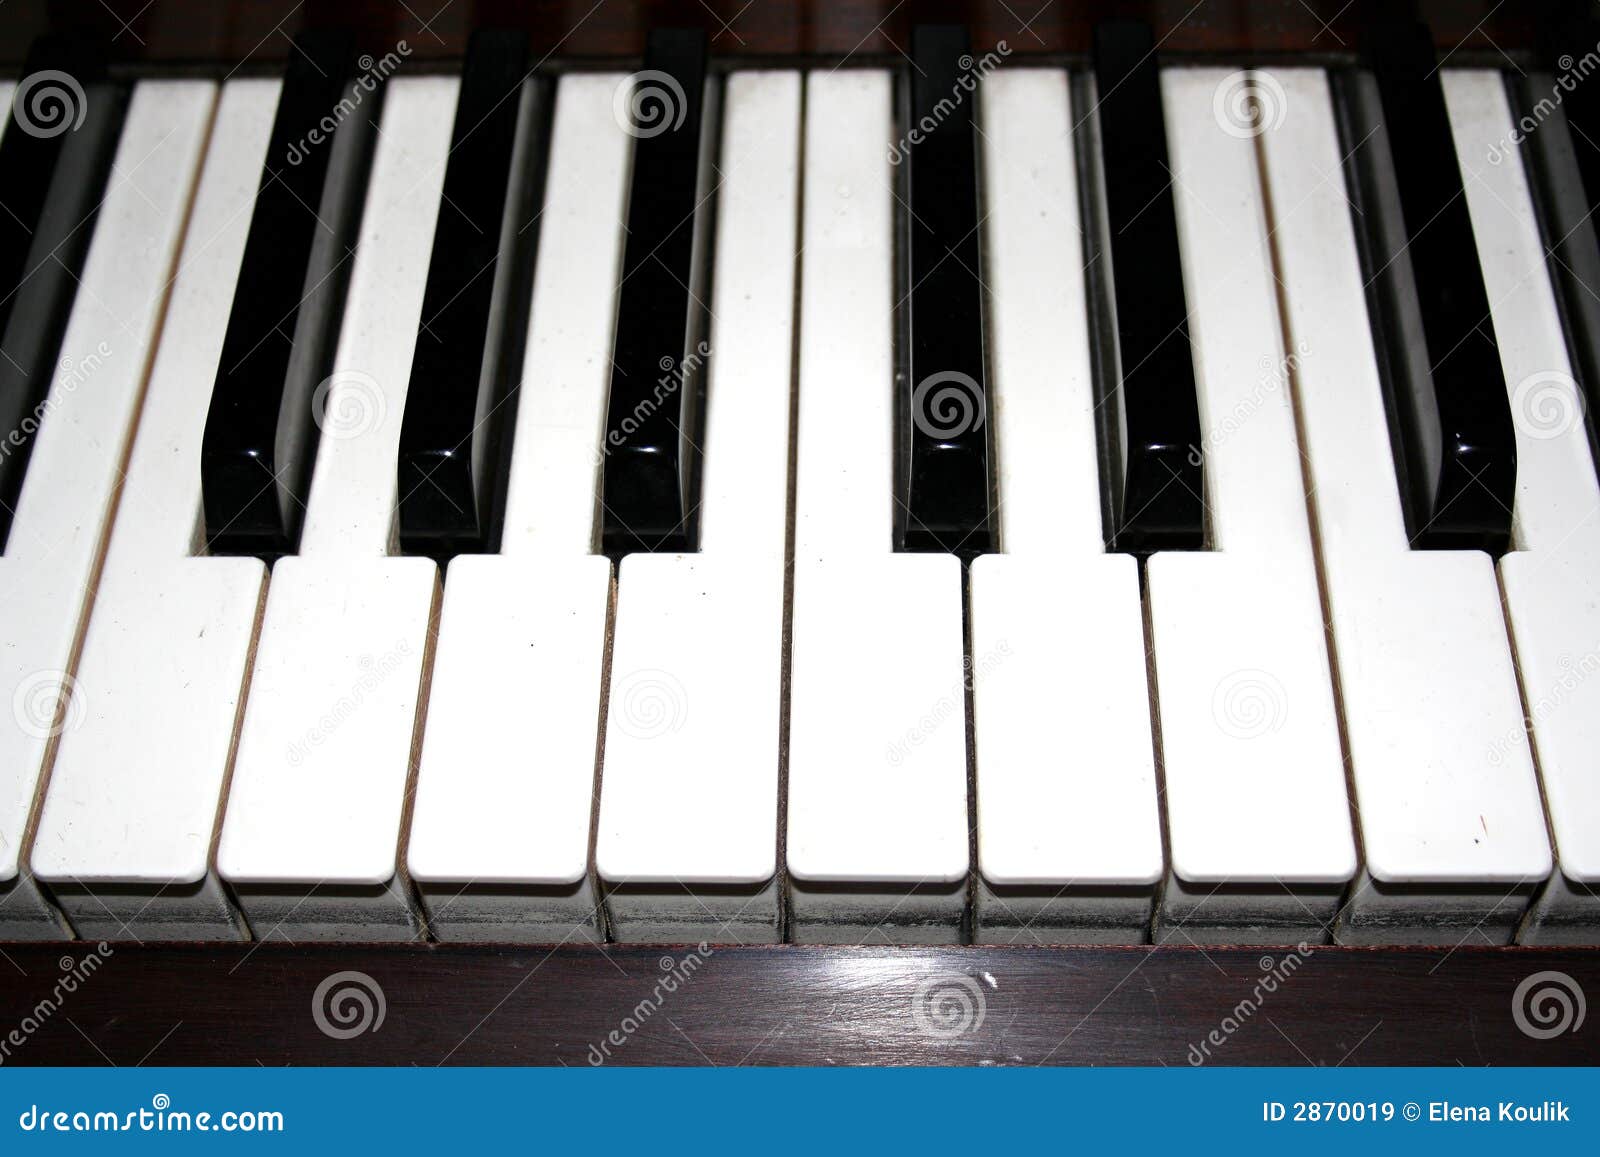 Снимаю с клавиши рояль. Купка клавиши пианино. Пожелтели пластиковые клавиши пианино. Клавиши пианино рычаг. Перо и клавиатура рояля.